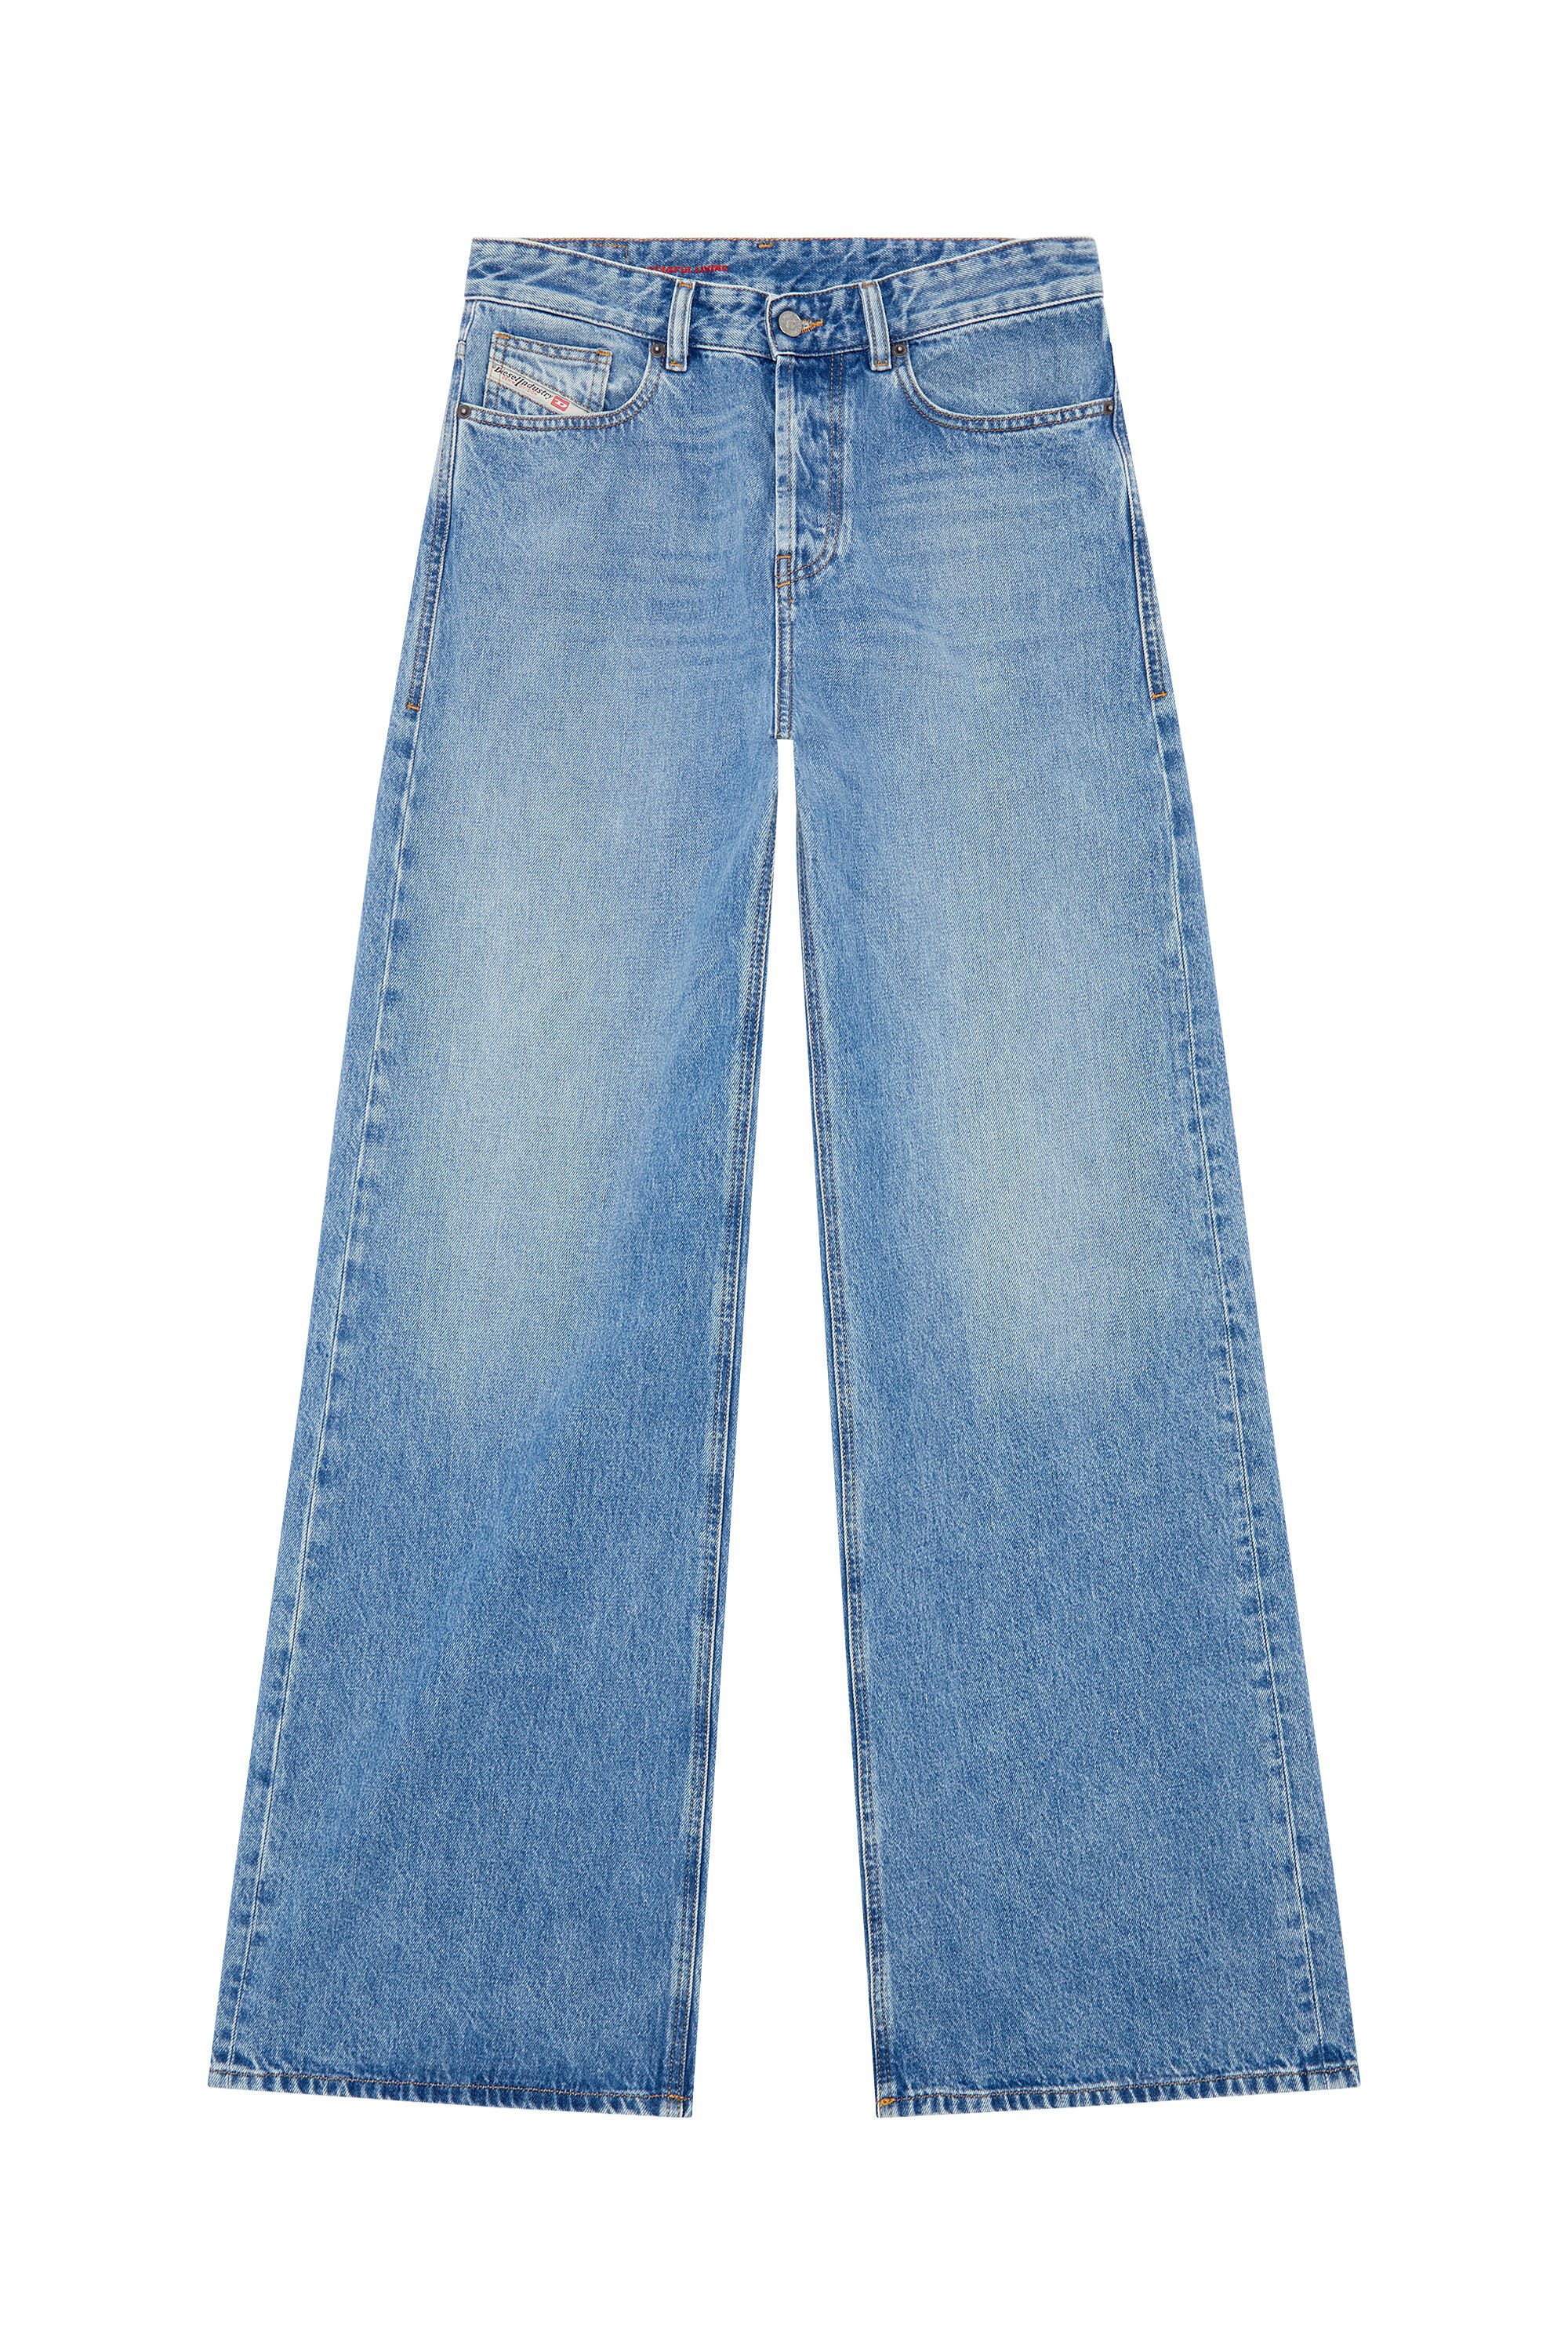 Women's Straight Jeans | Light blue | Diesel 1996 D-Sire